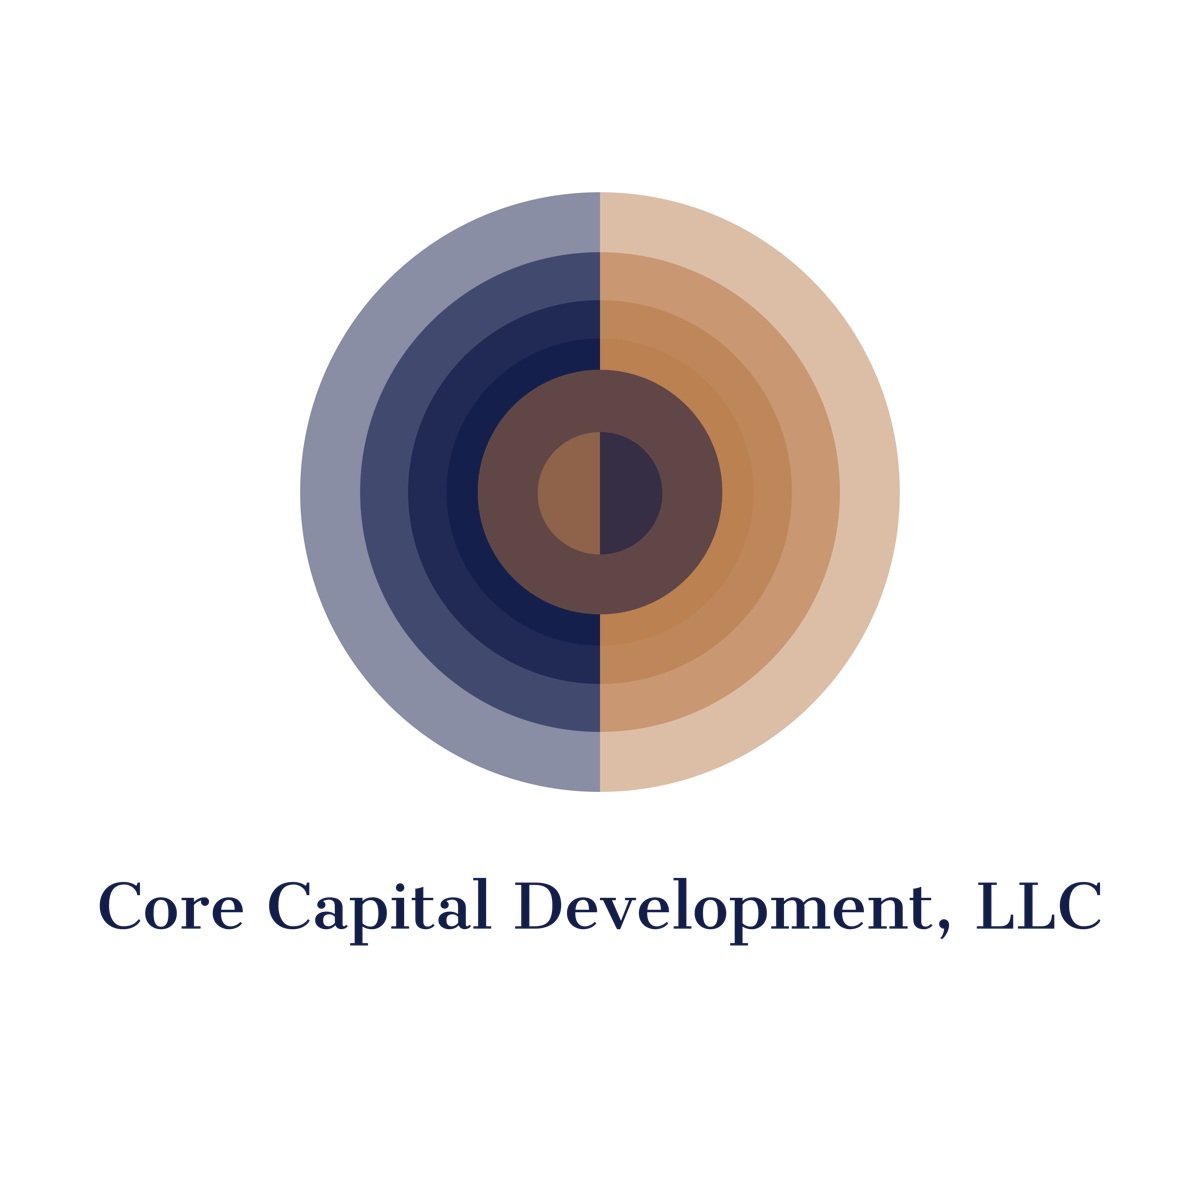 Core Capital Development, LLC